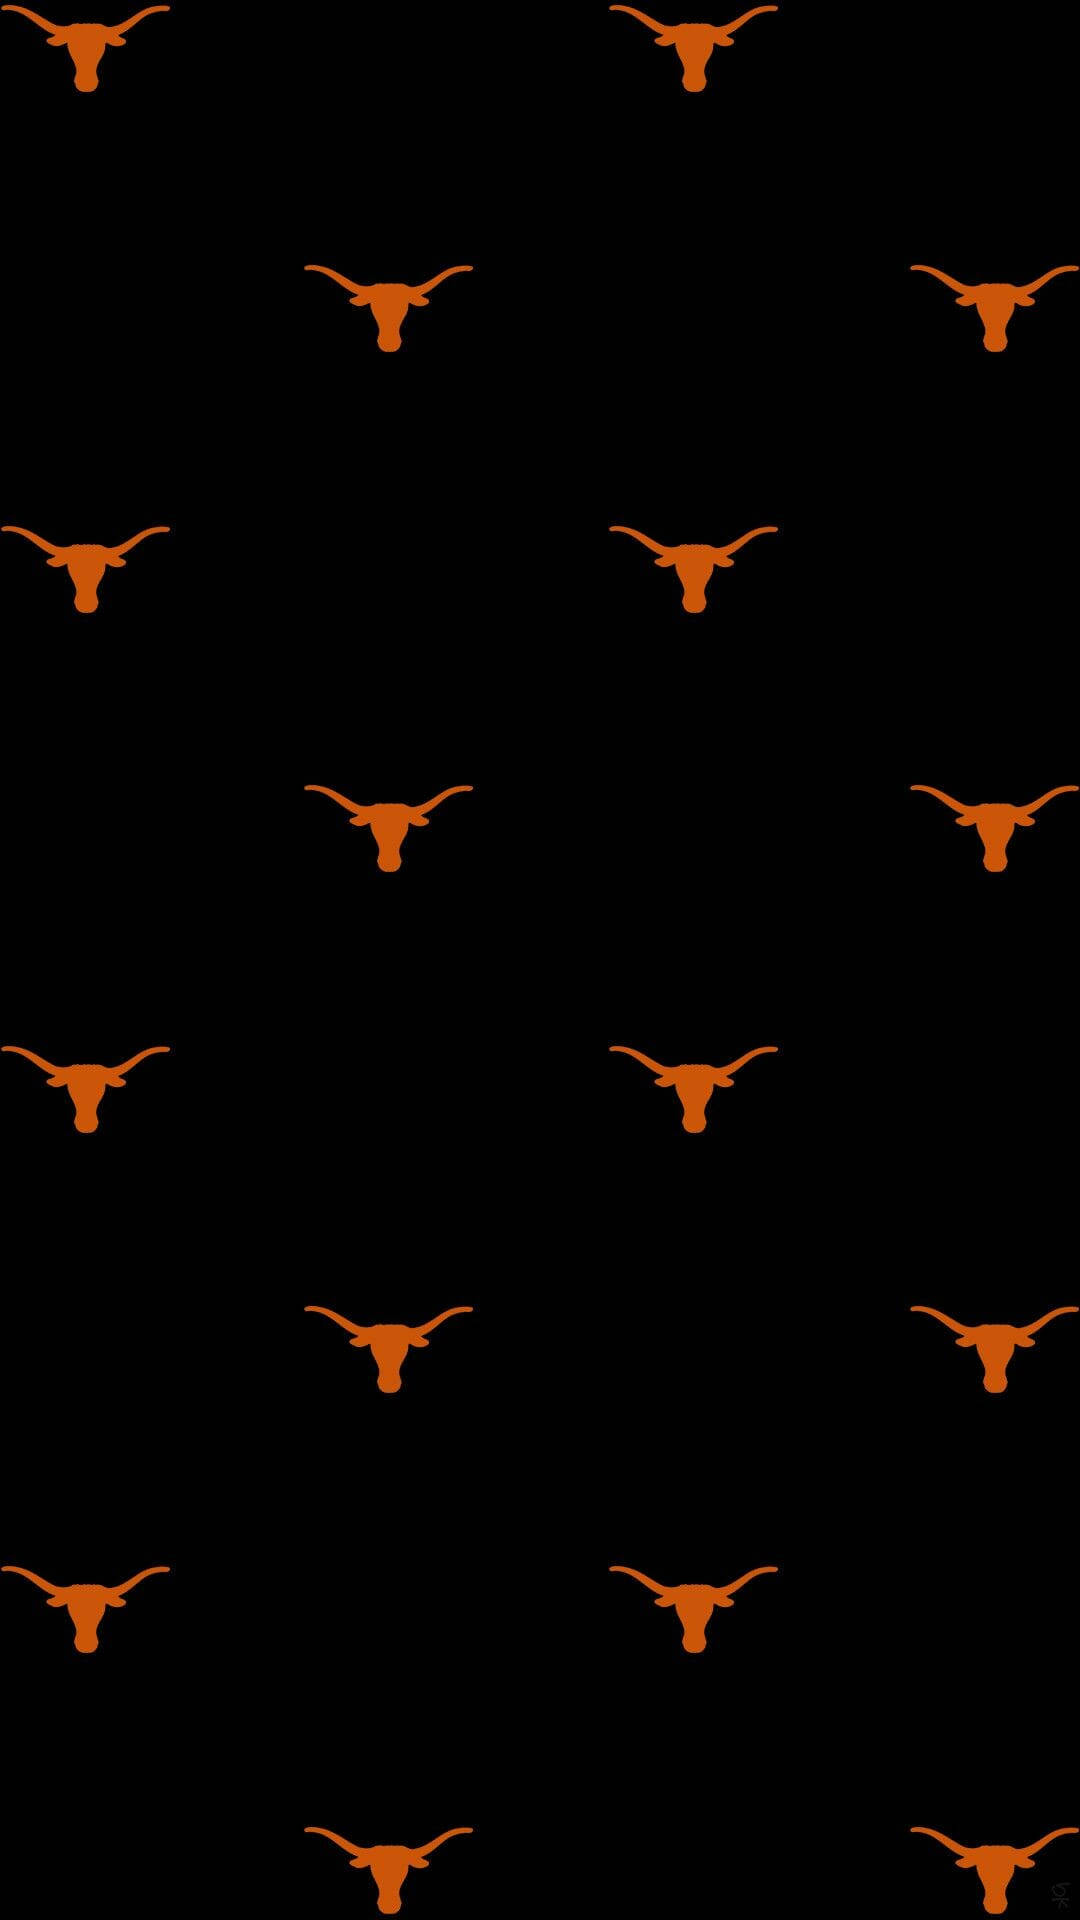 Patróndel Logotipo De Los Longhorns De La Universidad De Texas Fondo de pantalla